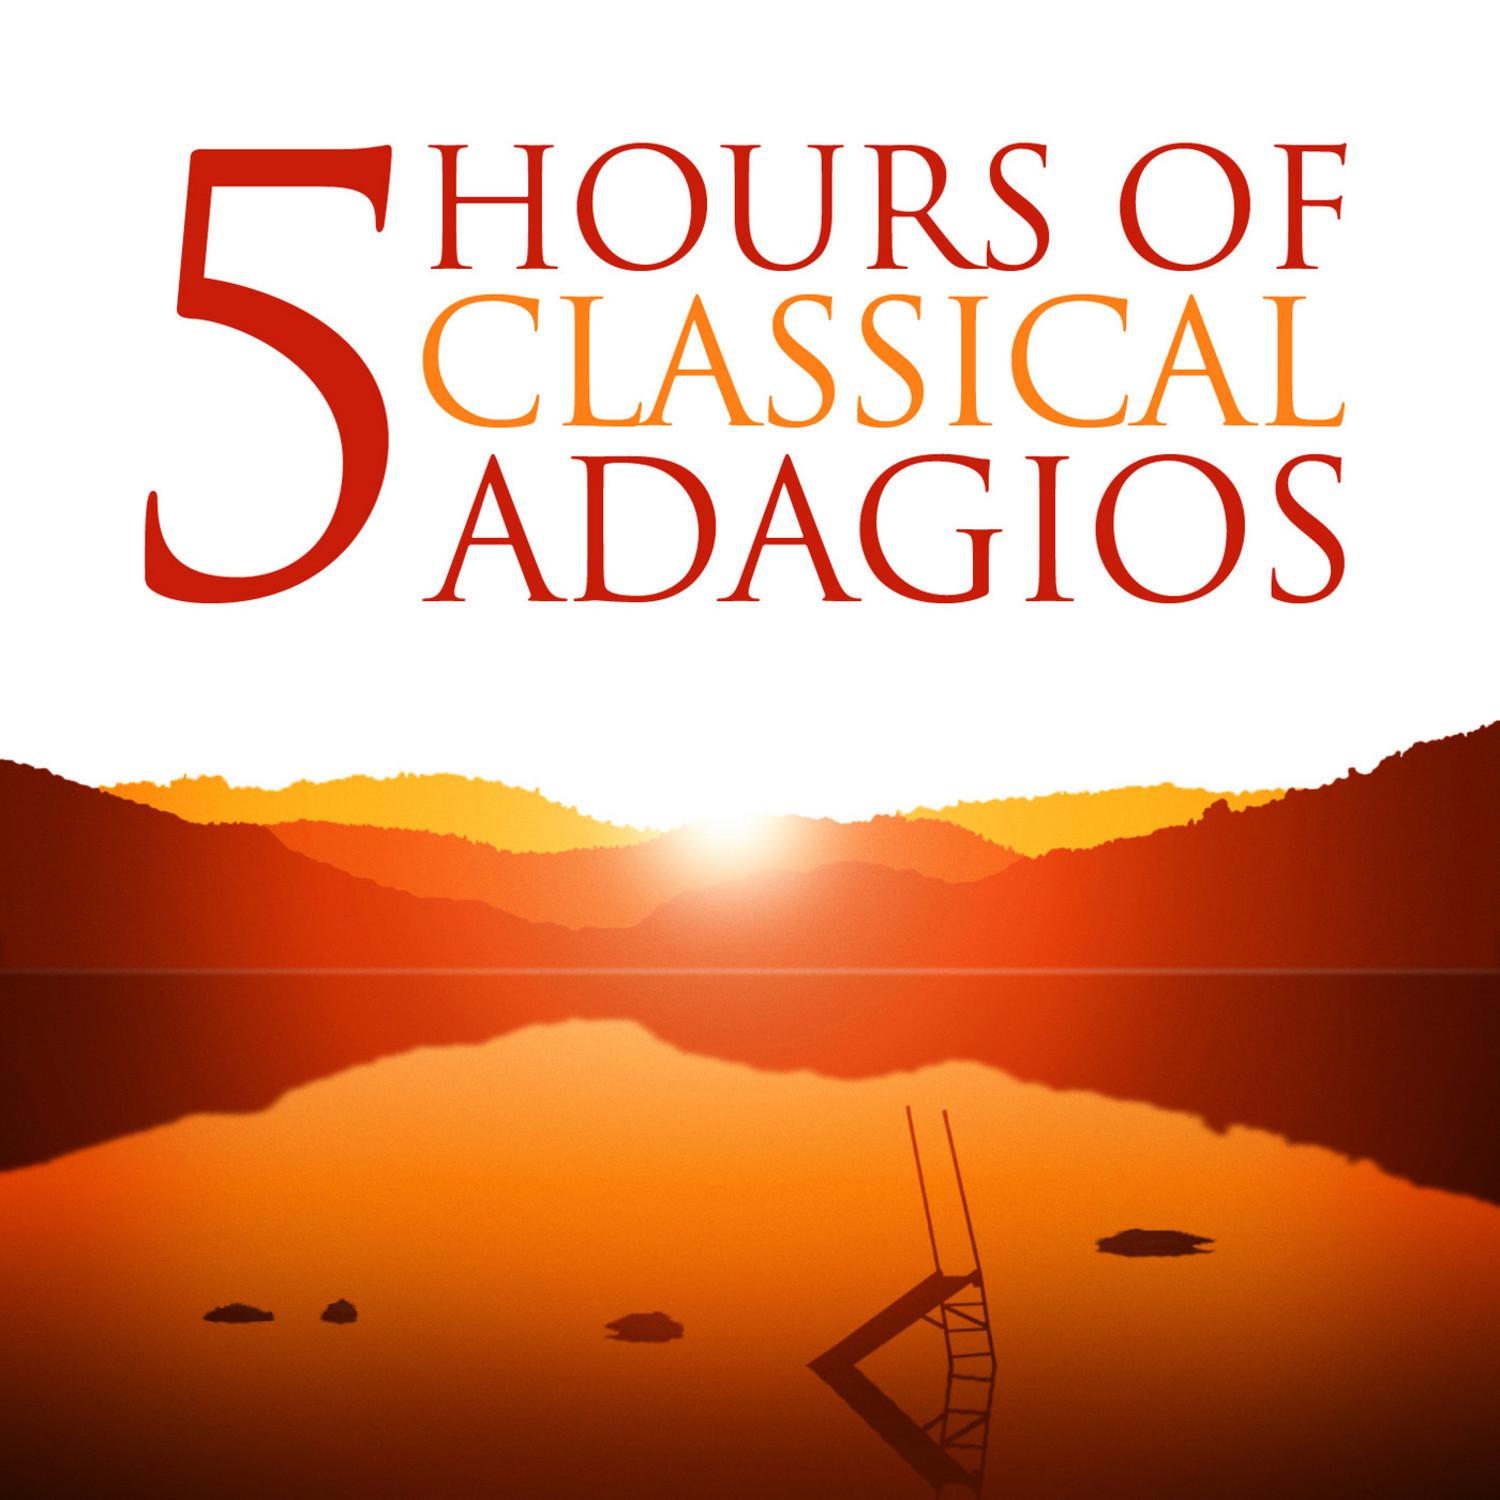 Symphony No. 5 in B Major, Op. 100: III. Adagio